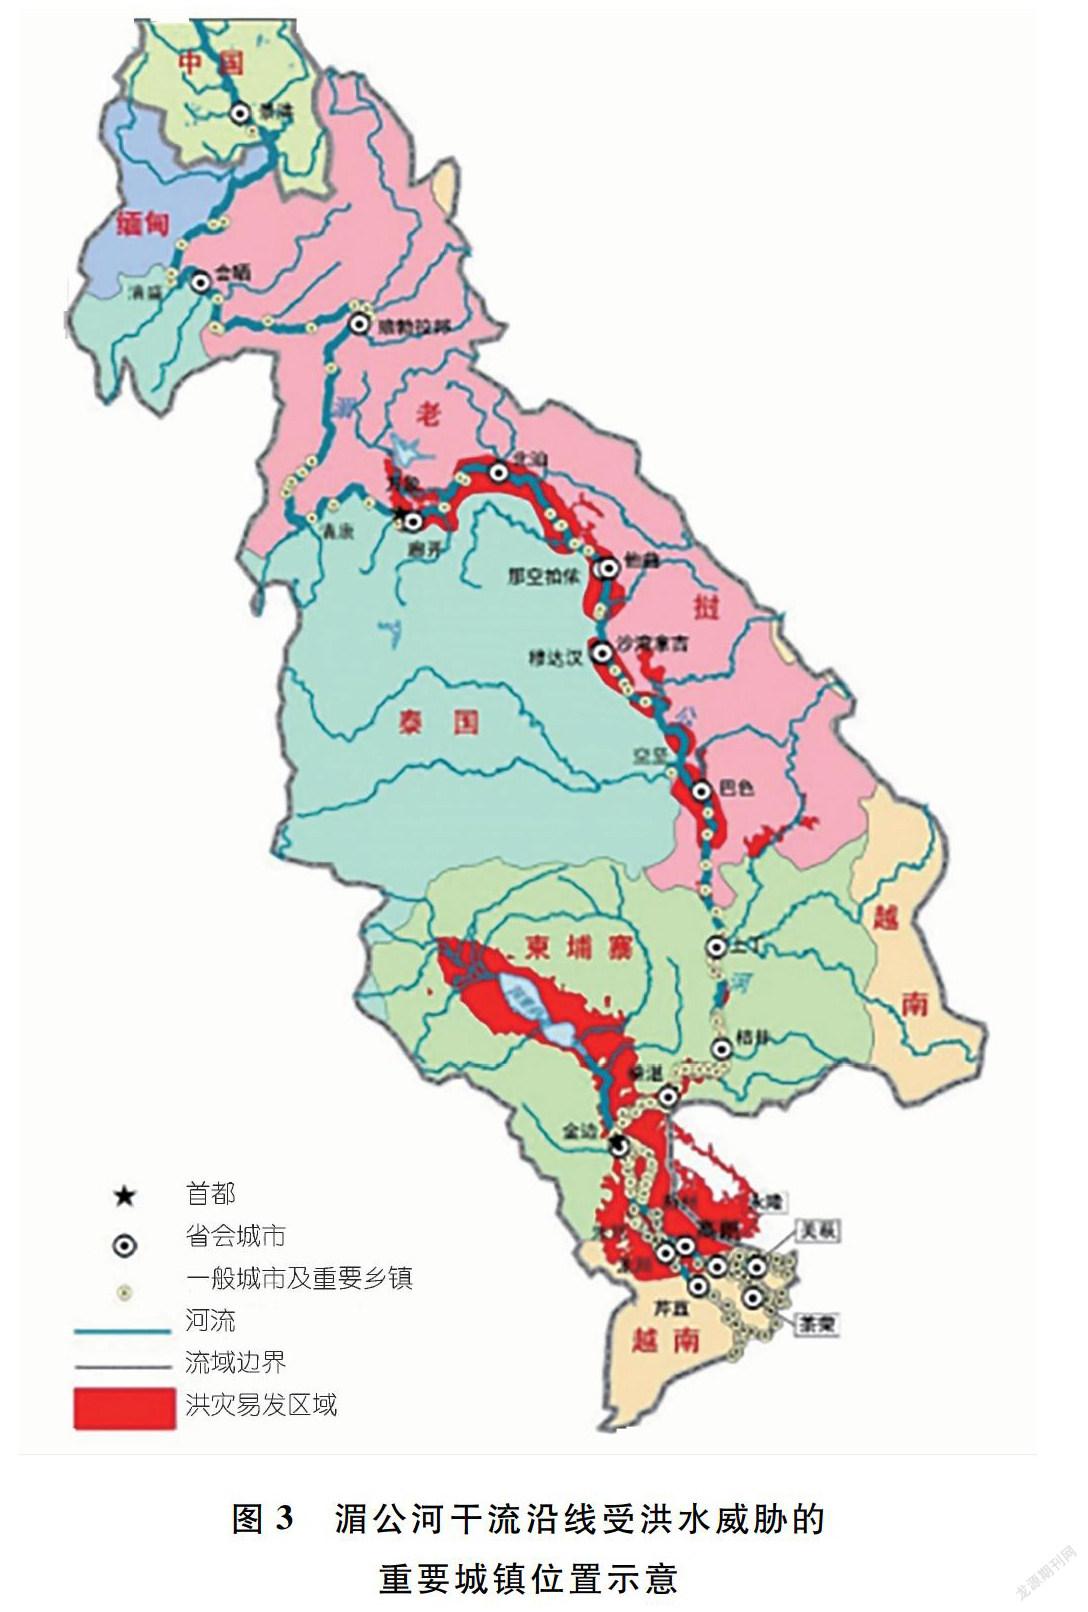 摘要:湄公河是一条著名的雨洪河流,单位面积洪峰流量接近全球雨洪河流